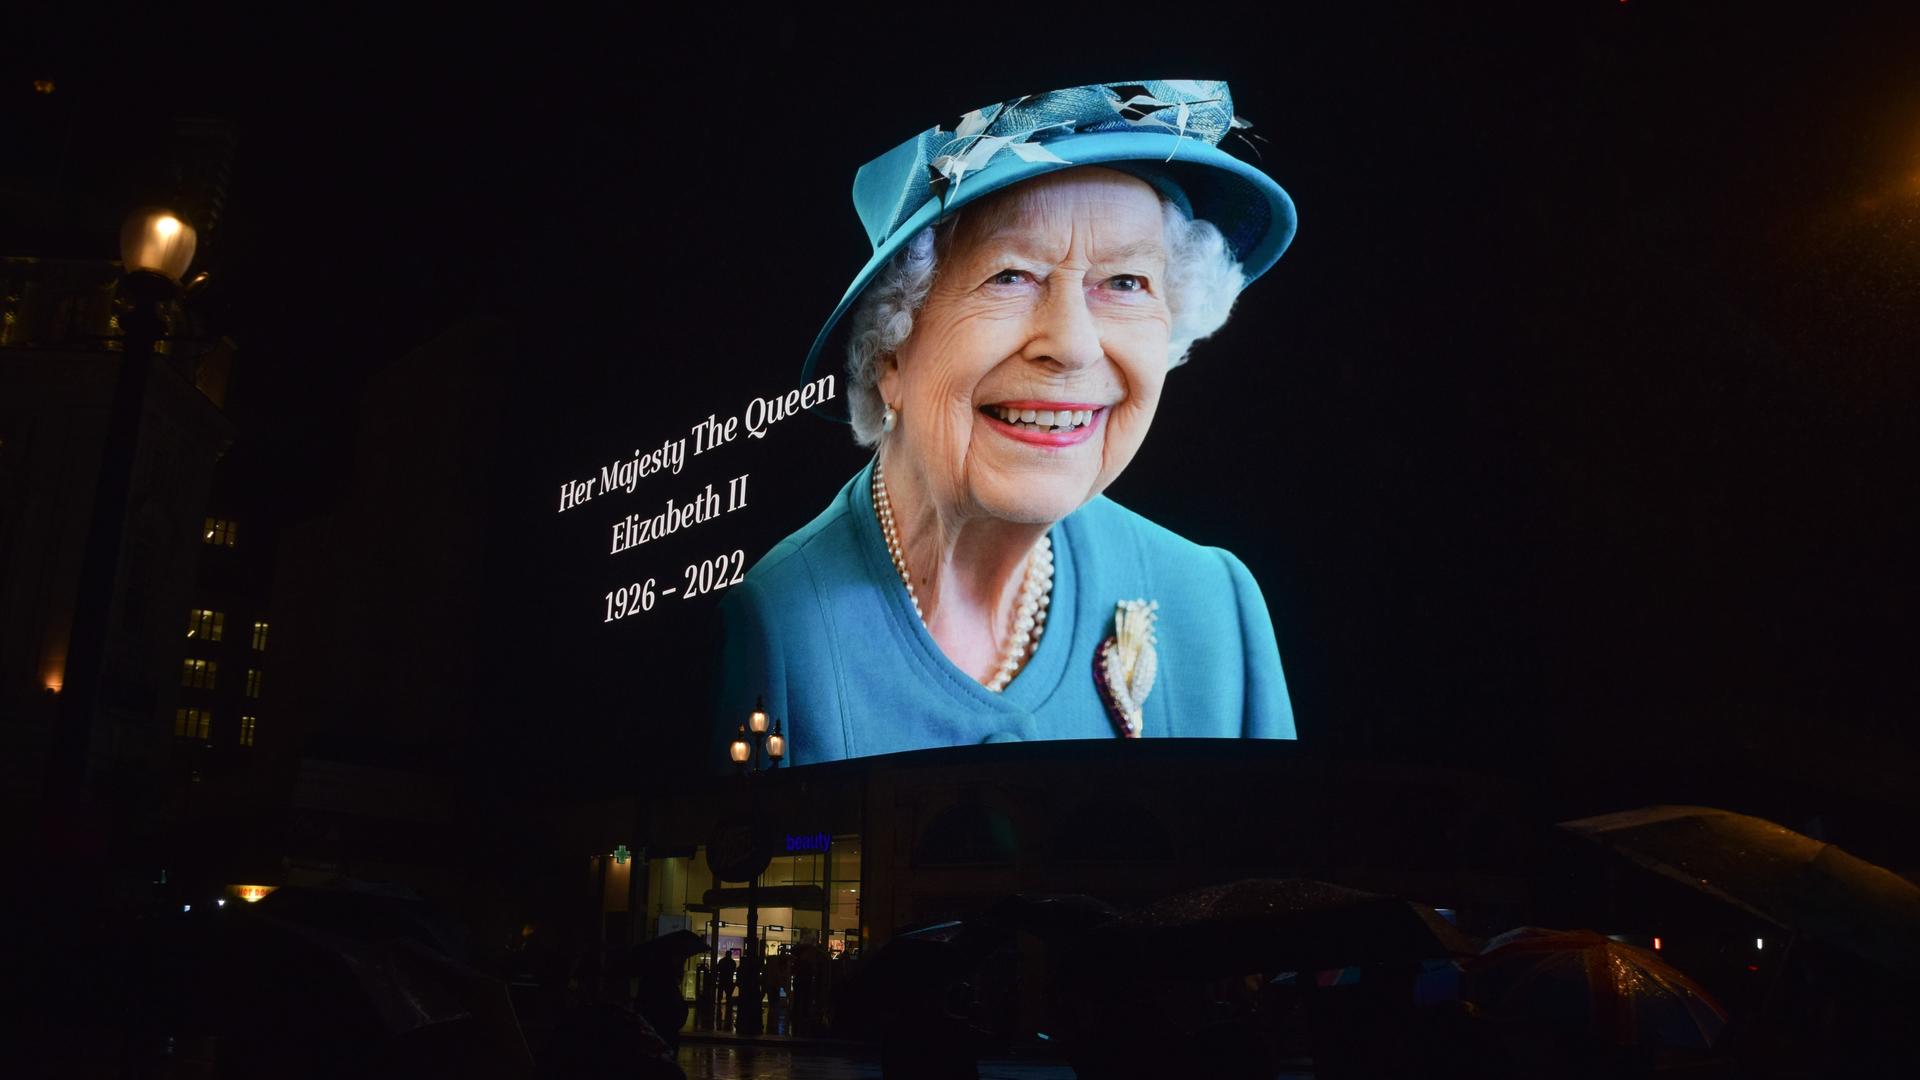 Am 8. September 2022 zeigt eine Reklamewand am Piccadilly Circus das Porträt der Queen, die ein hellblaues Kleid und entsprechenden Hut trägt und freundlich lächelt.